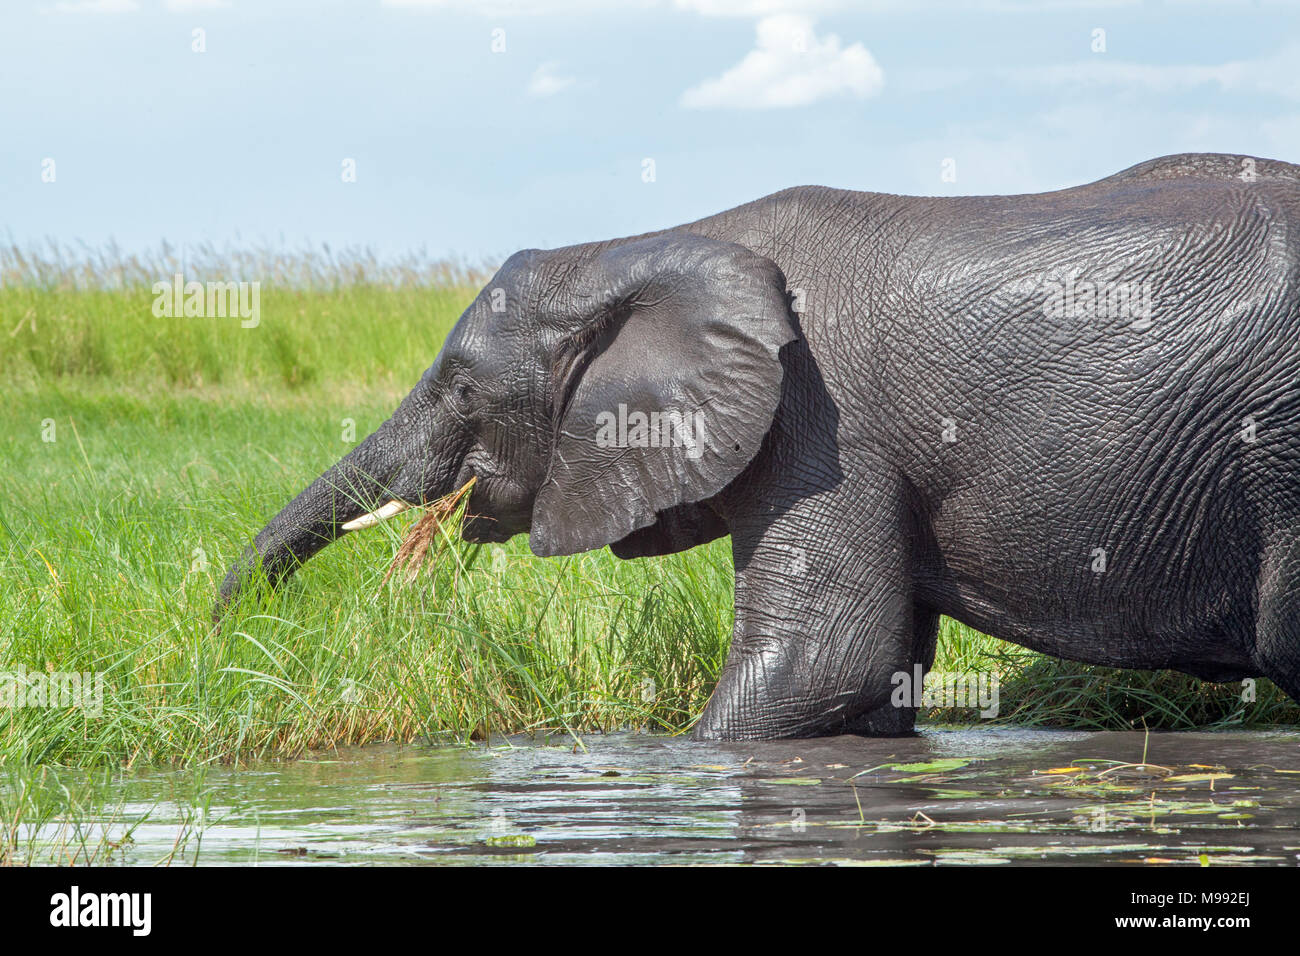 Afrikanischer Elefant (Loxodonta africana). Sammeln von grünem Wasser Rand Vegetation mit Trunk zu essen. Chobe National Park. Okavango Delta. Botswana. Afrika Stockfoto